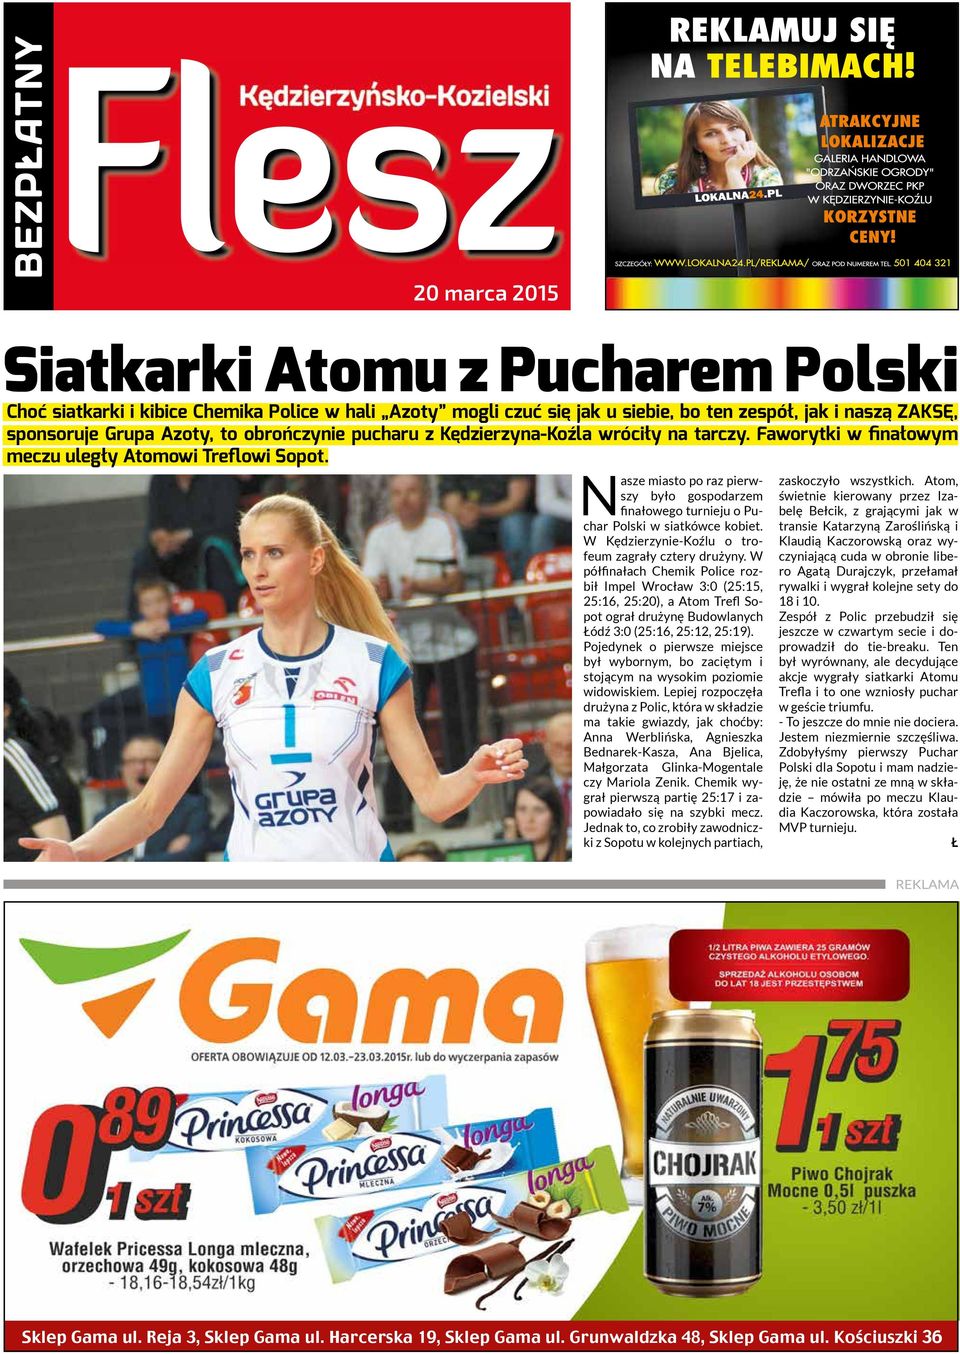 Nasze miasto po raz pierwszy było gospodarzem finałowego turnieju o Puchar Polski w siatkówce kobiet. W Kędzierzynie-Koźlu o trofeum zagrały cztery drużyny.